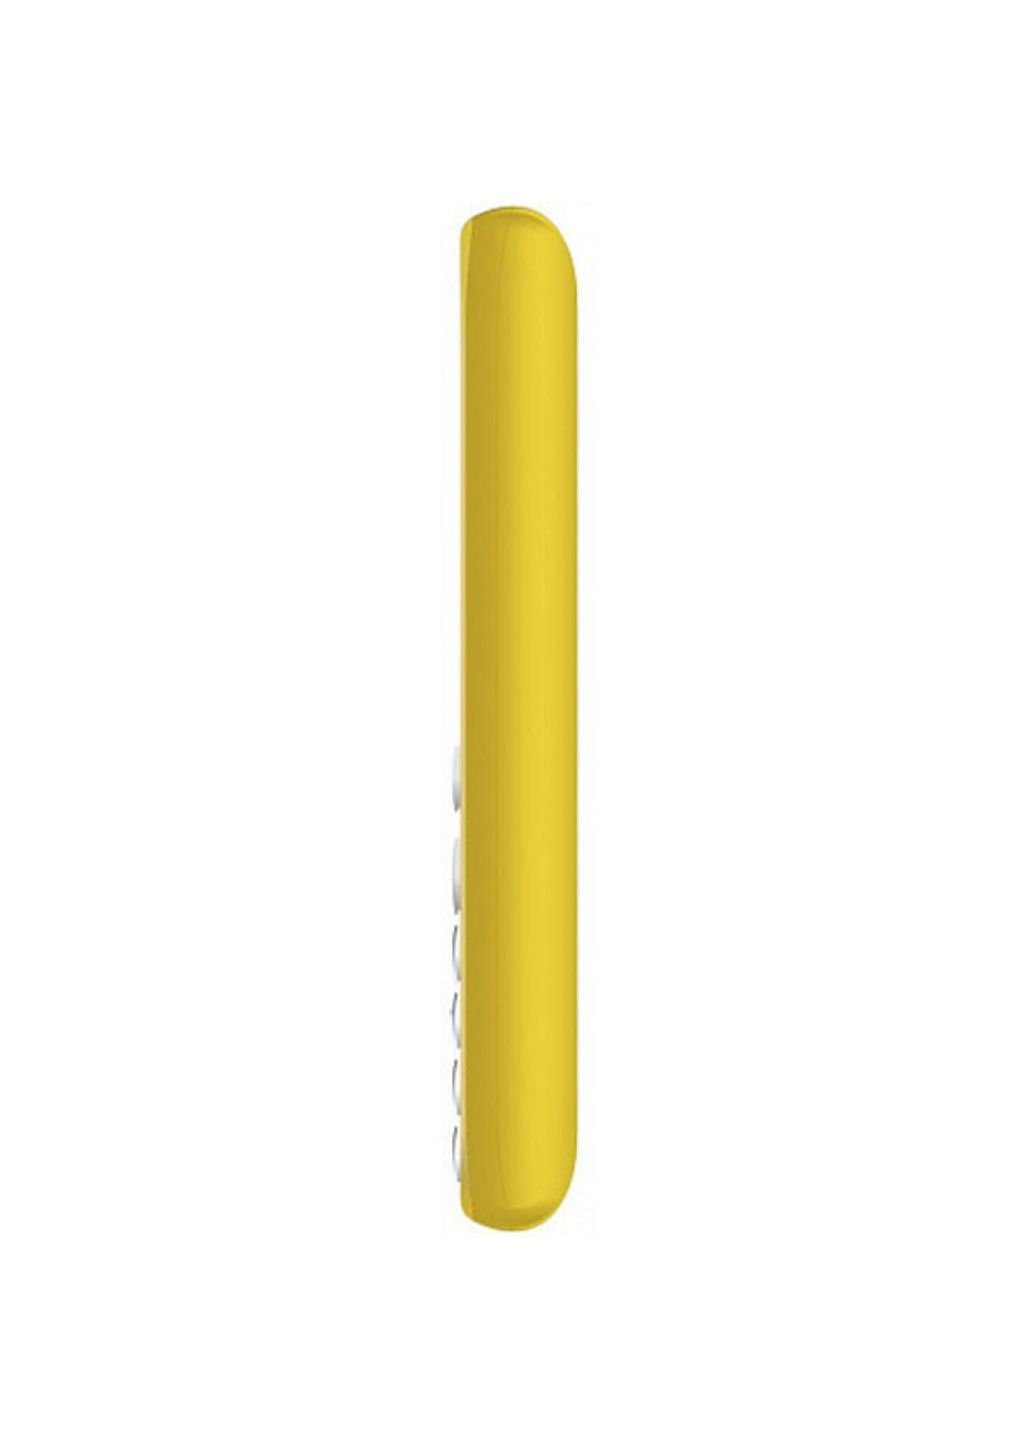 Мобильный телефон (4713095608278) Verico classic a183 yellow (253507656)